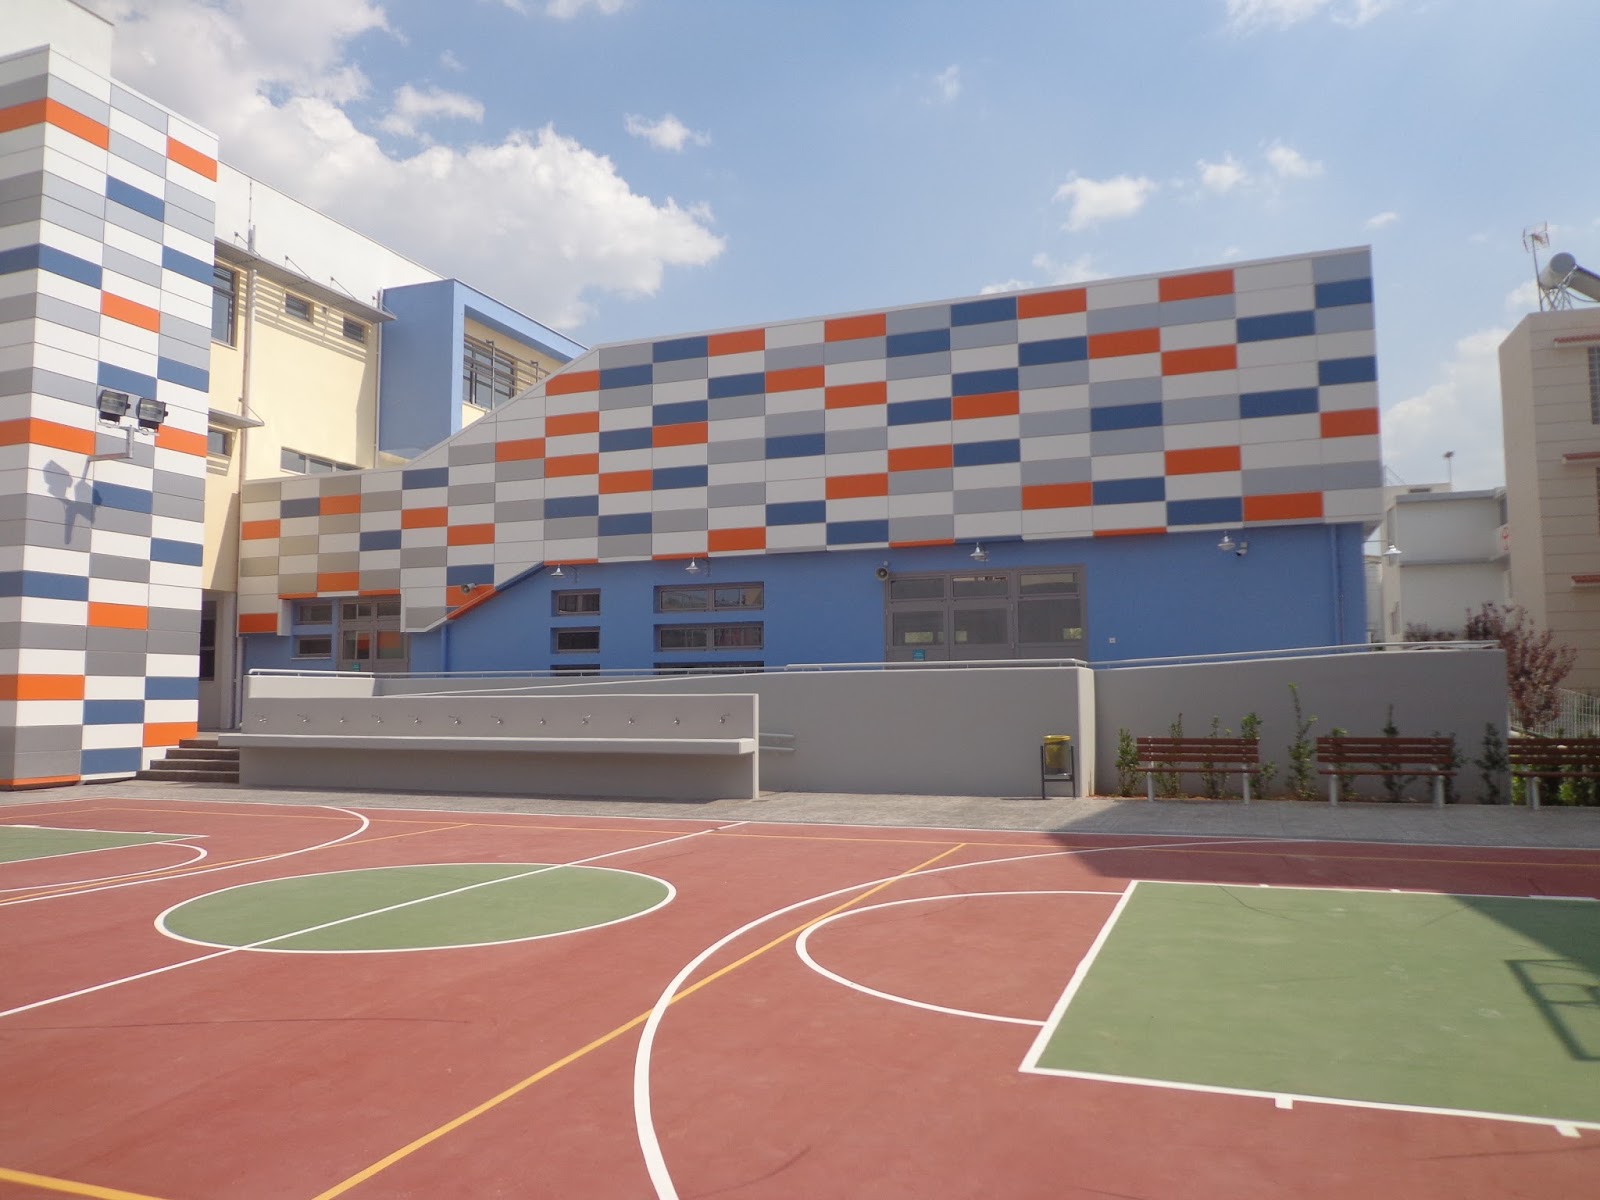 Με αντισηπτικό υγρό και μαντιλάκια προμηθεύει σχολεία ο Δήμος Ιλίου